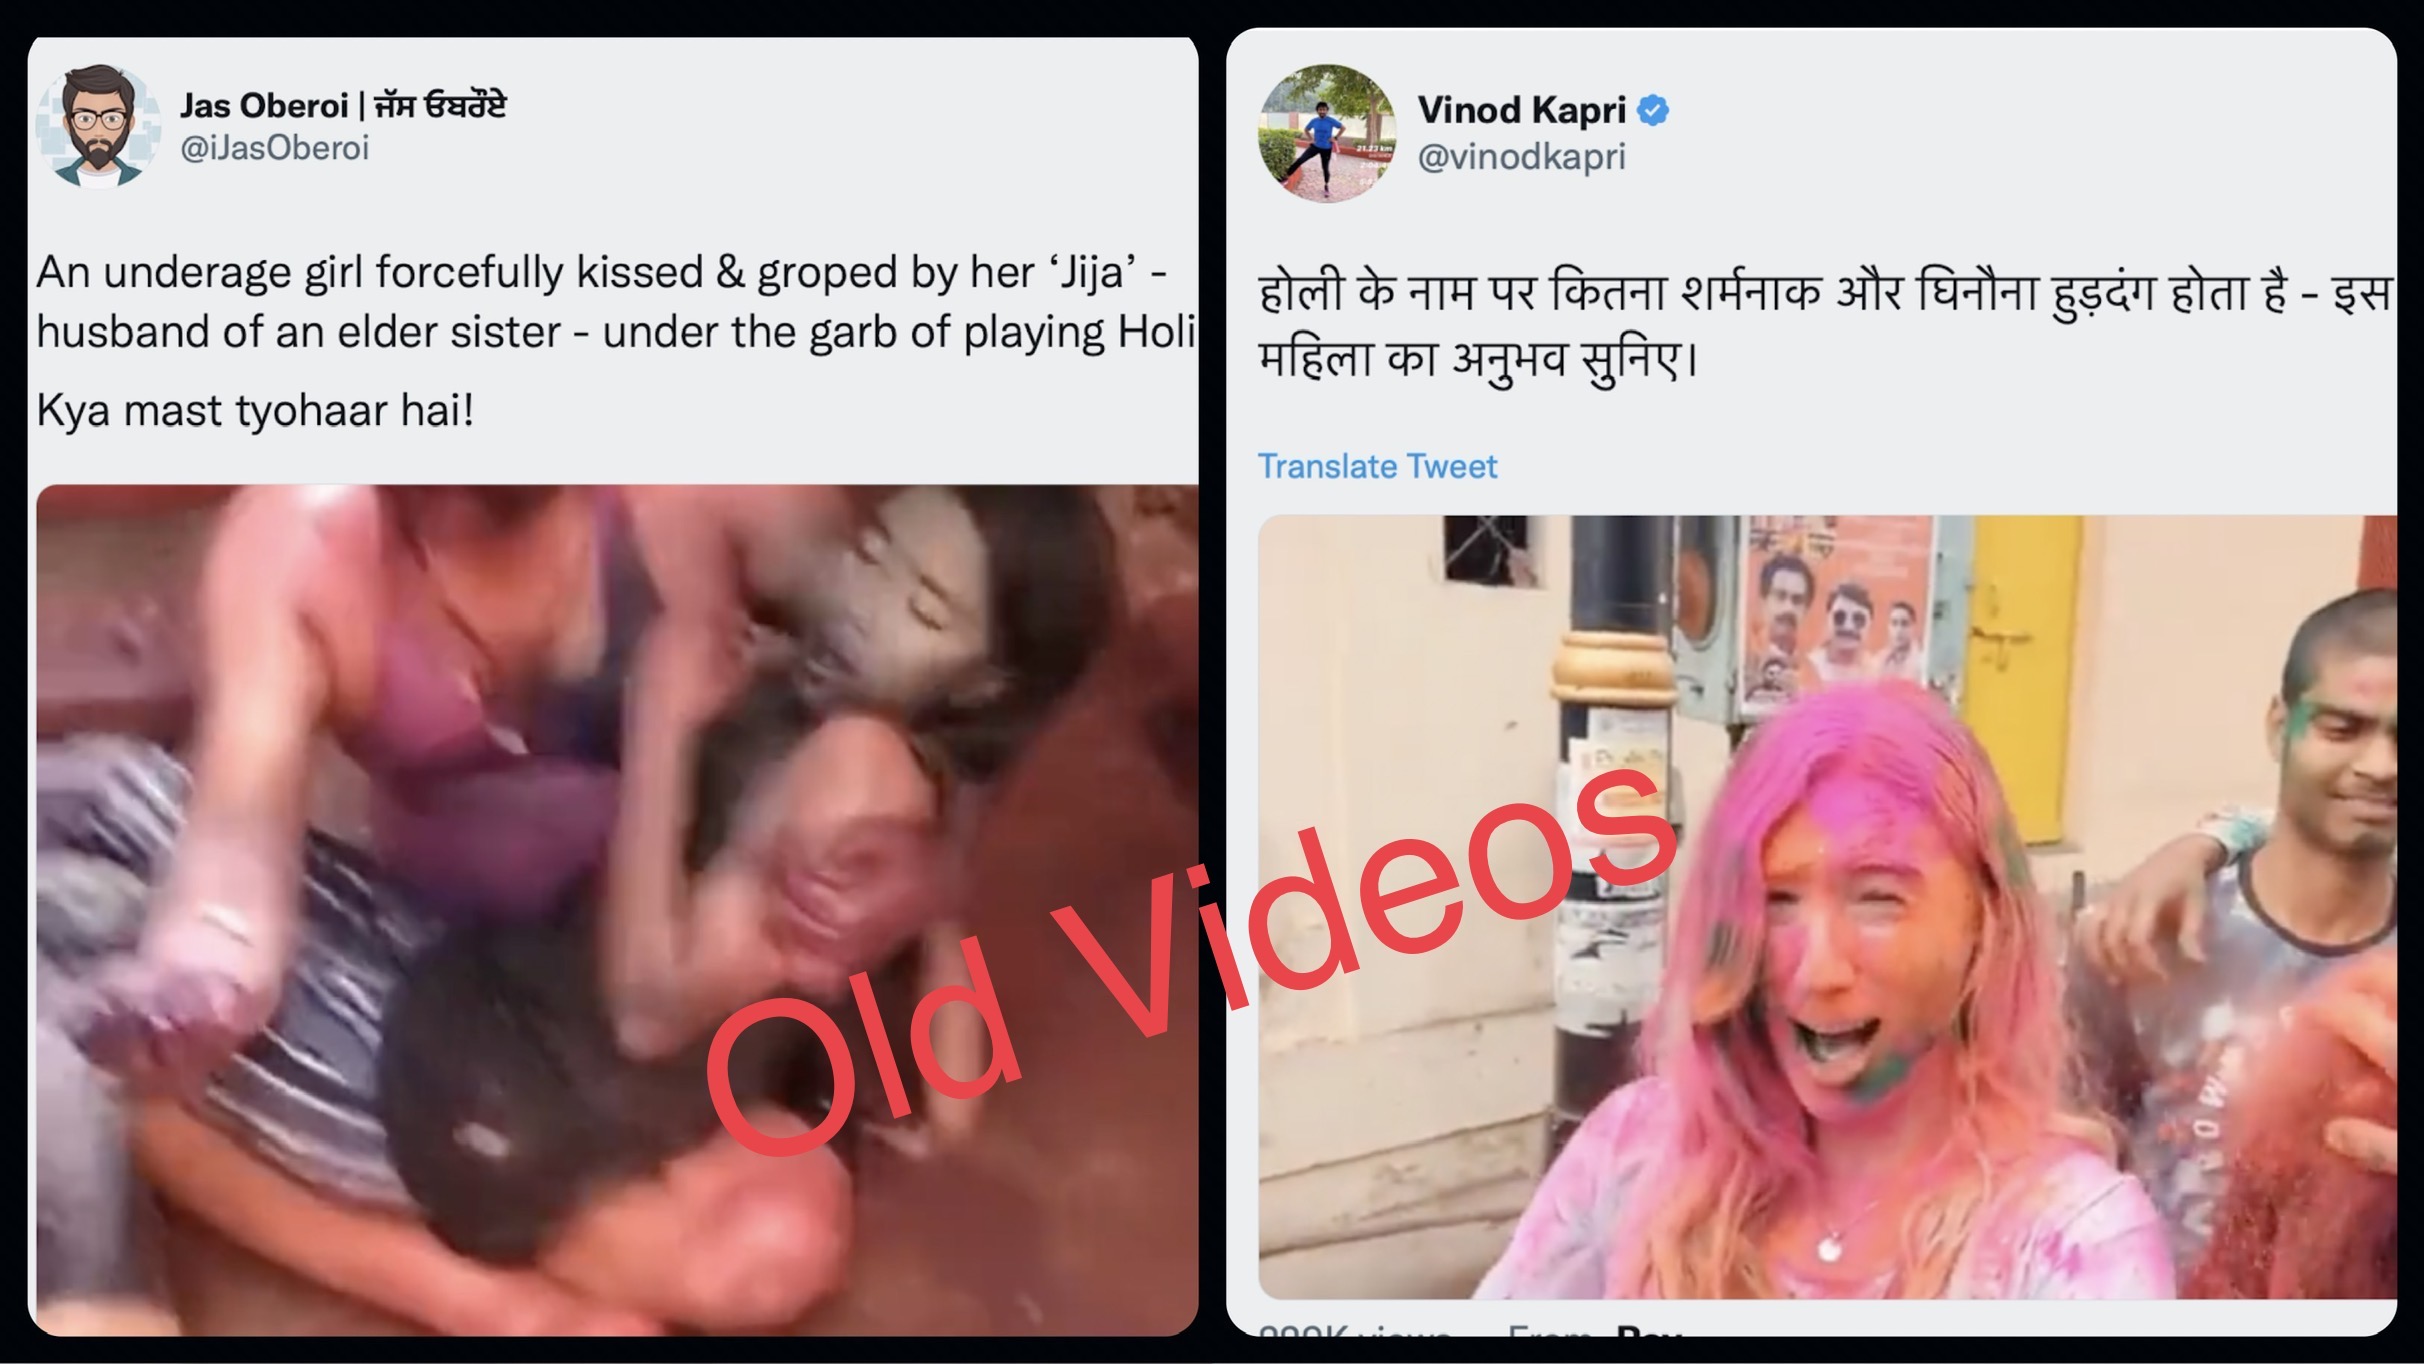 Holi 2018 Sex - Old videos maligning Hindu festival of Holi in circulation on social media